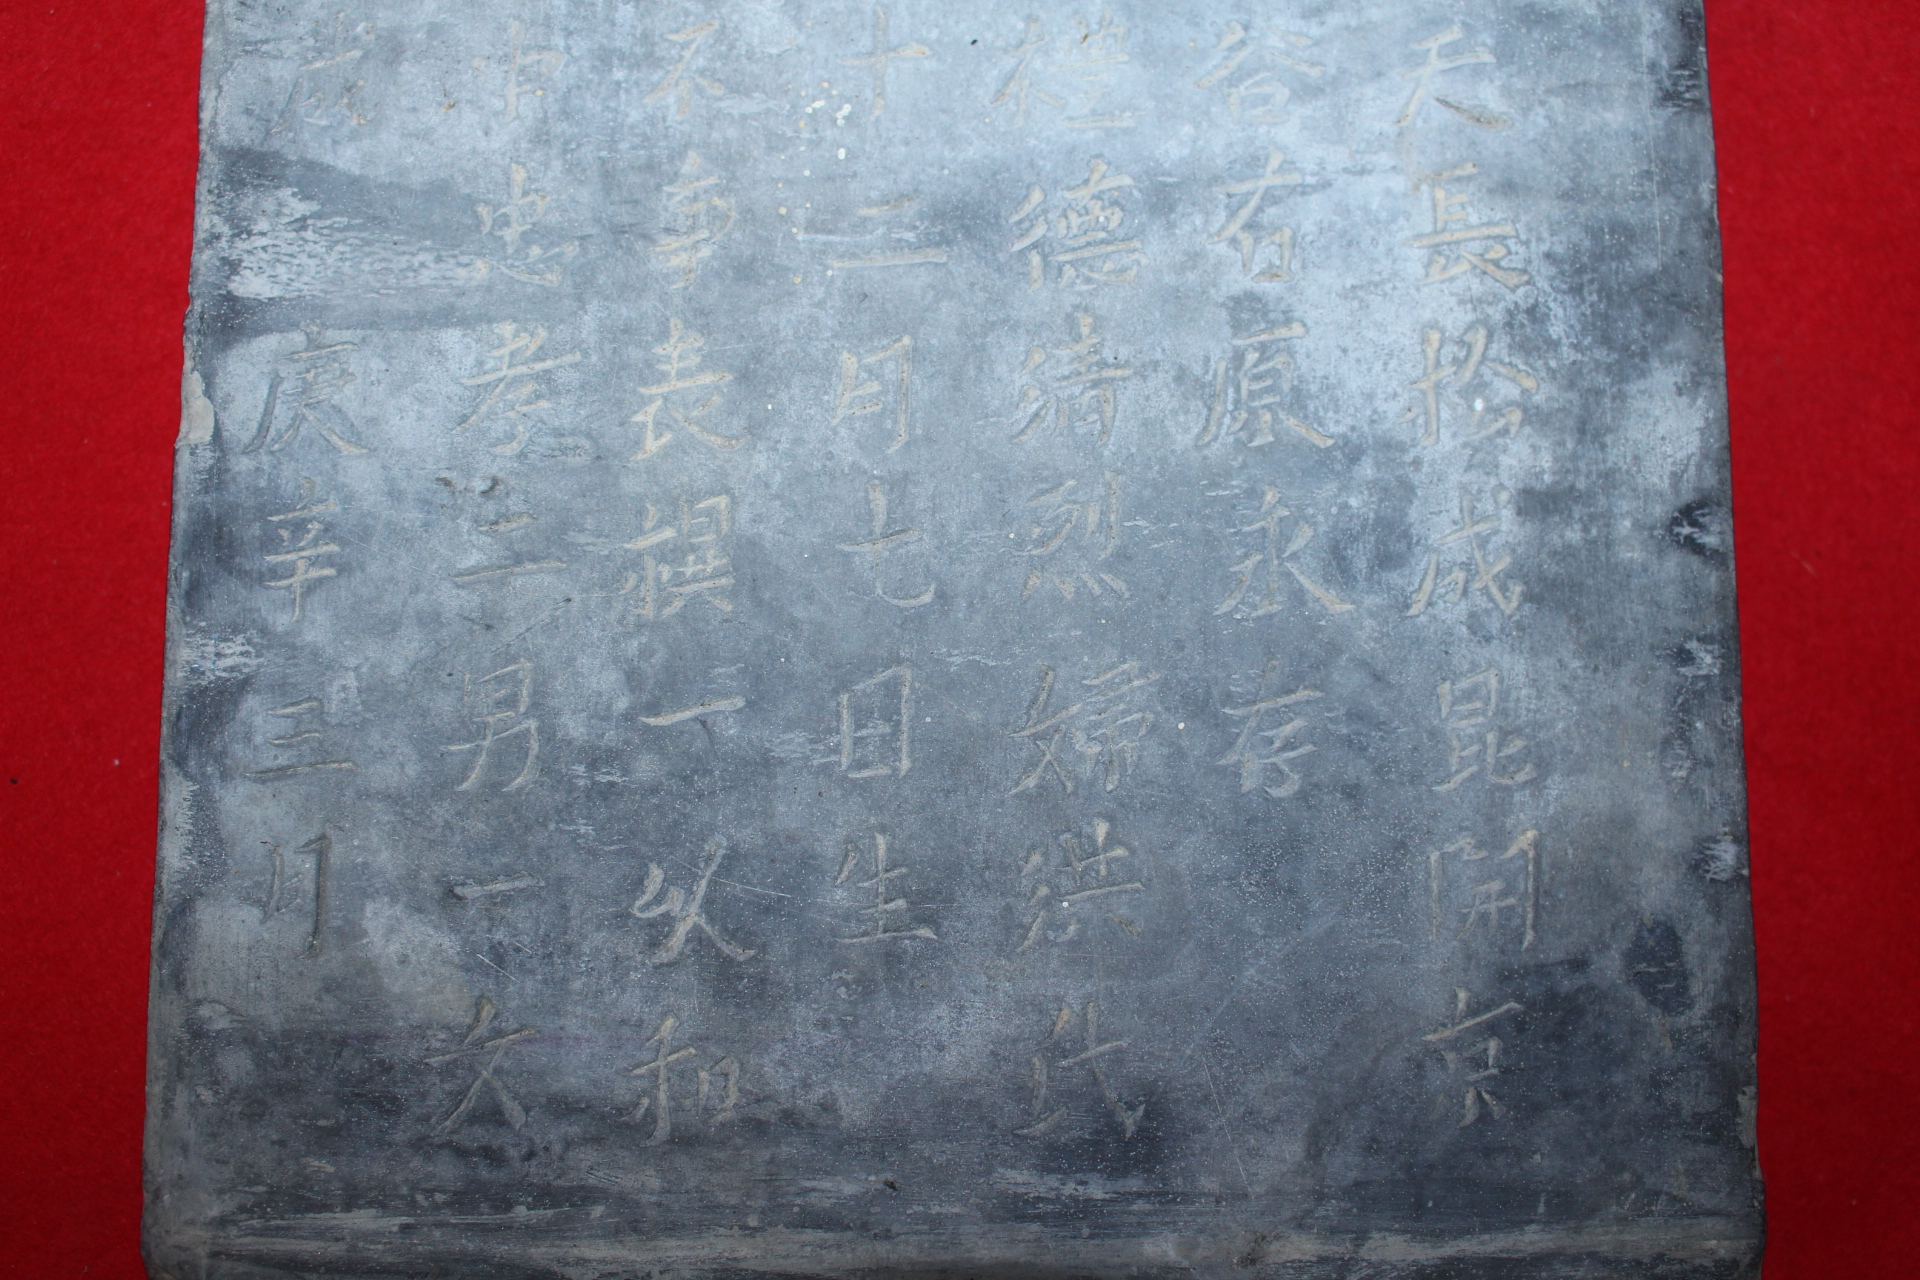 1459년(英宗乙卯) 중국 명나라시기 돌로된 백공지묘지(白公之墓誌)